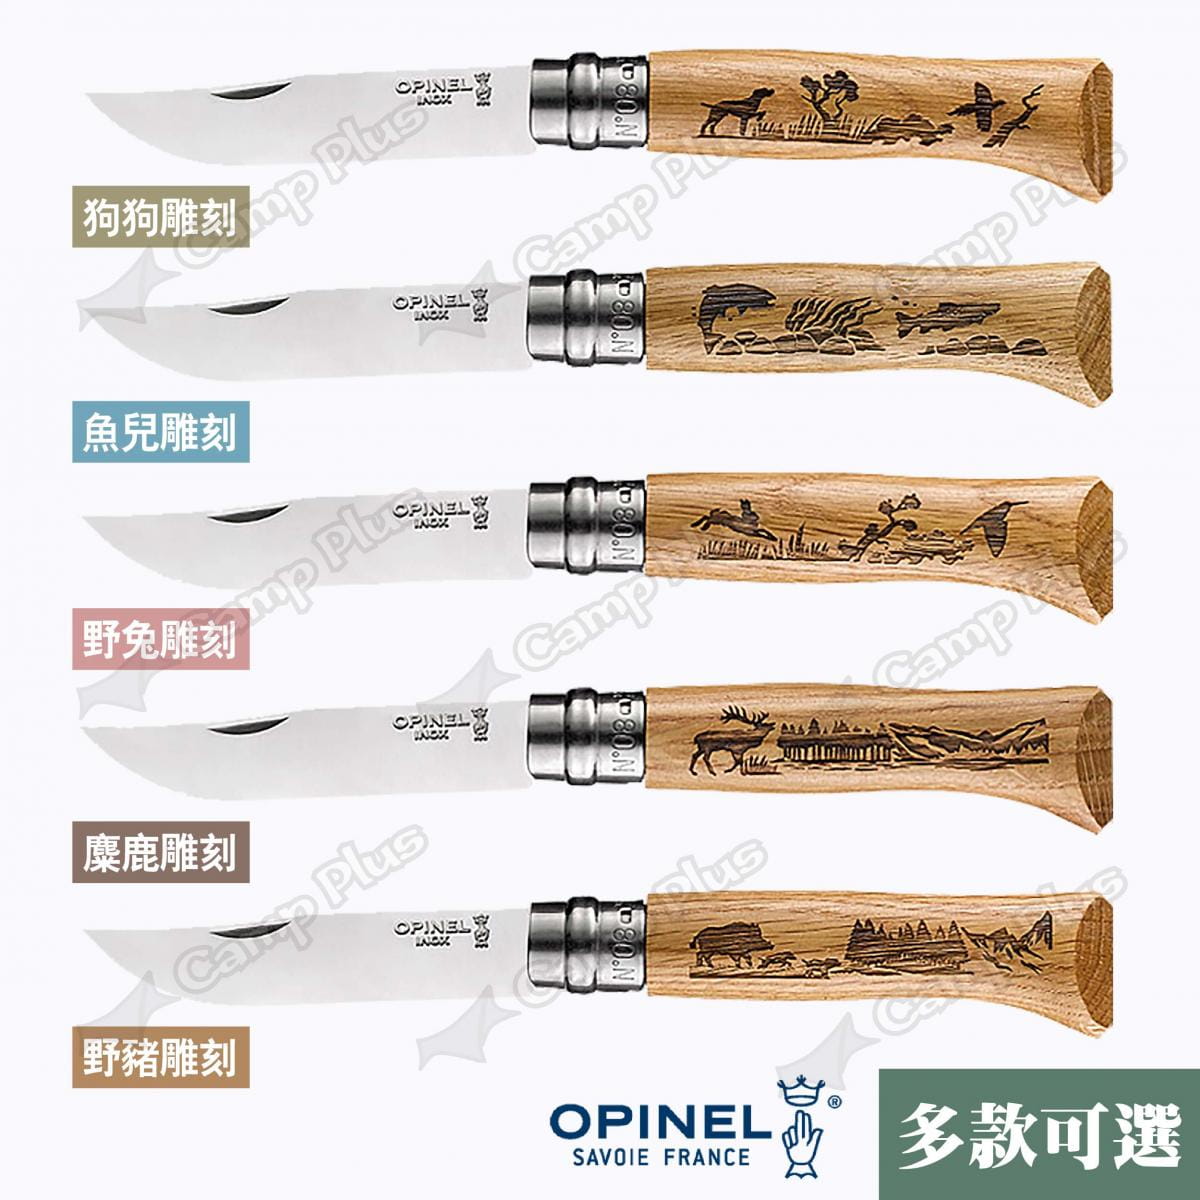 【OPINEL】N°8法國不鏽鋼折刀 002331~35 野生動物系列 悠遊戶外 7